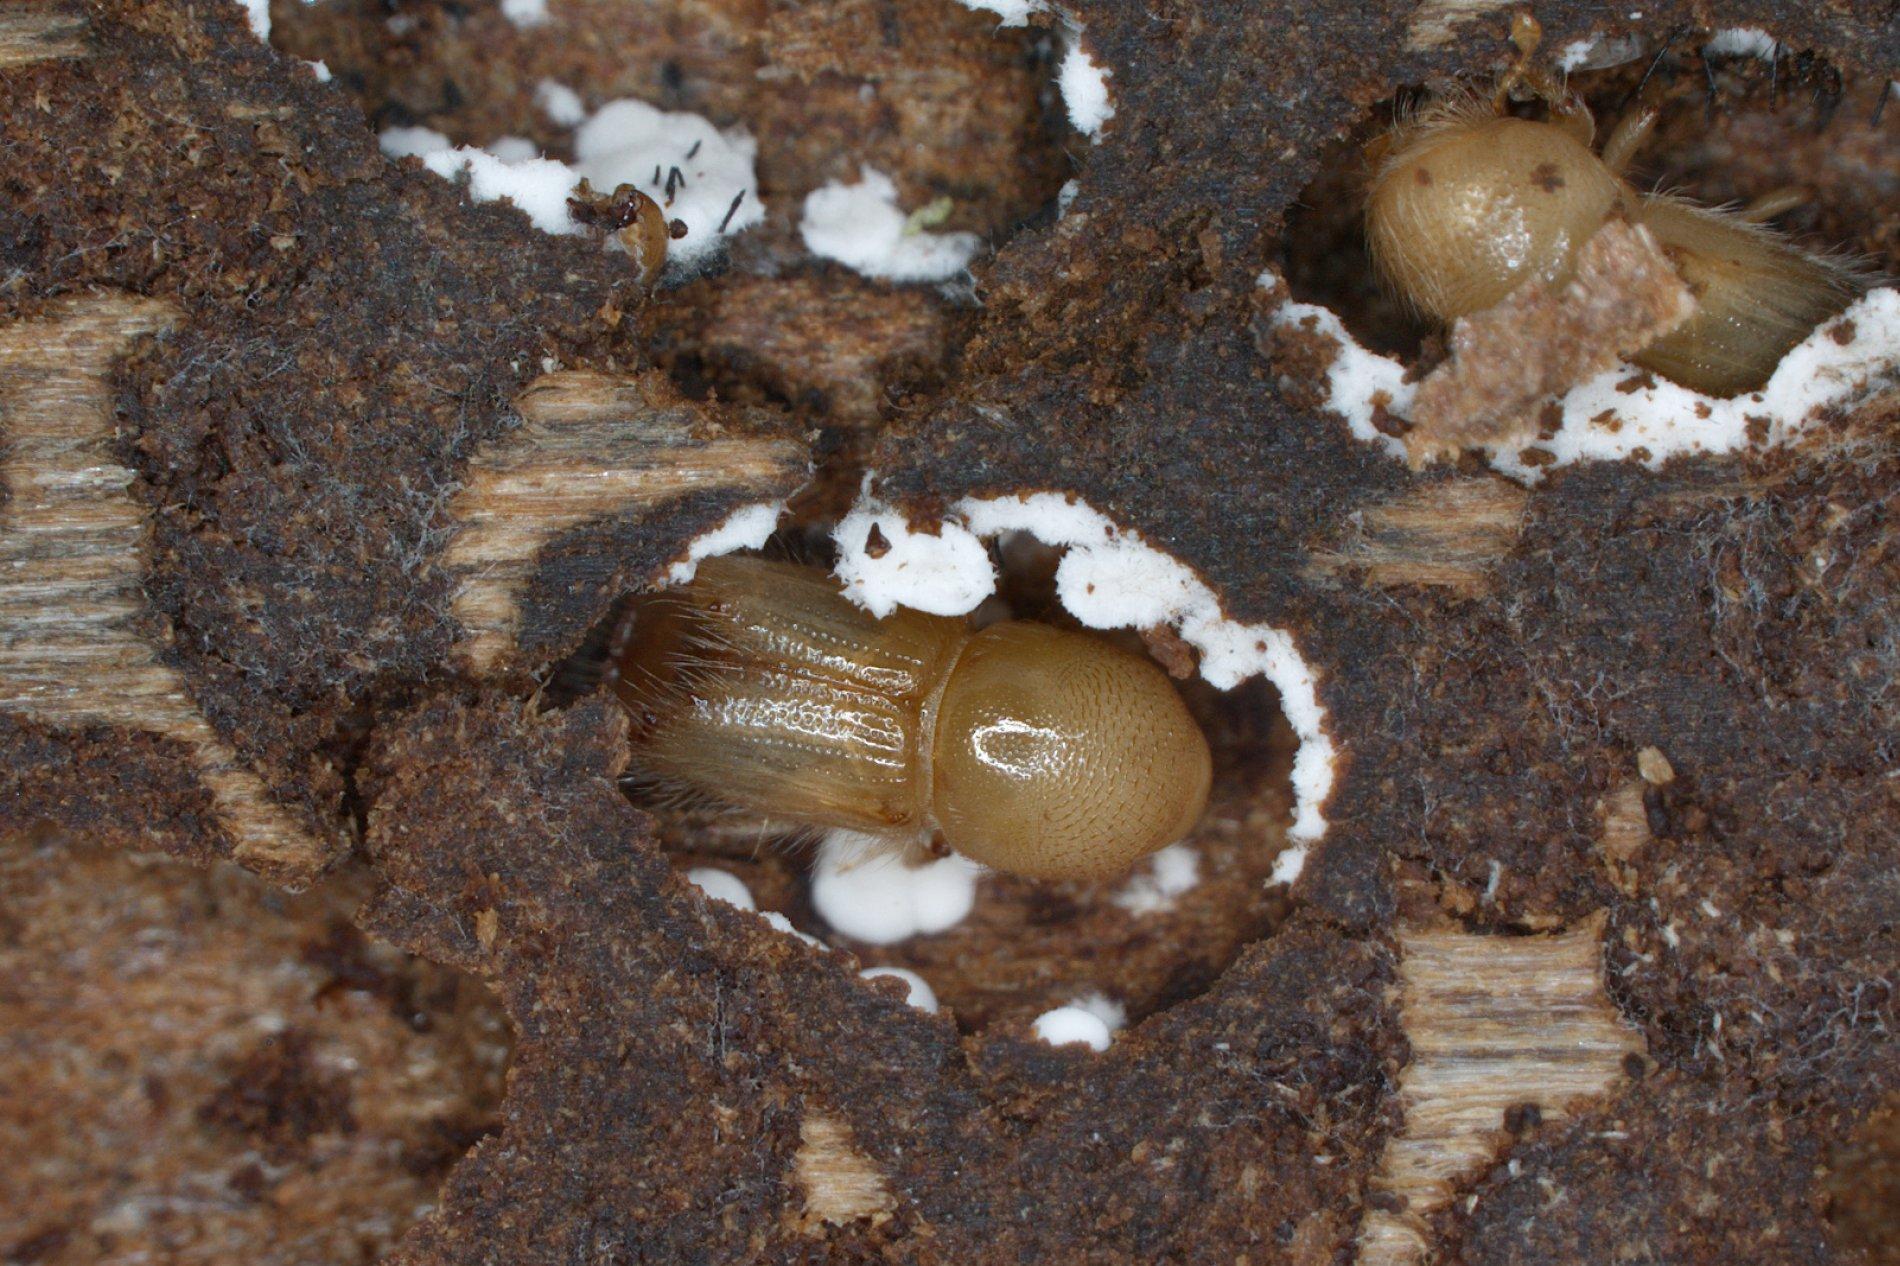 Ein bräunlicher Käfer liegt in einer Mulde. An den Wänden der Mulde haften weiße Pilzfäden.